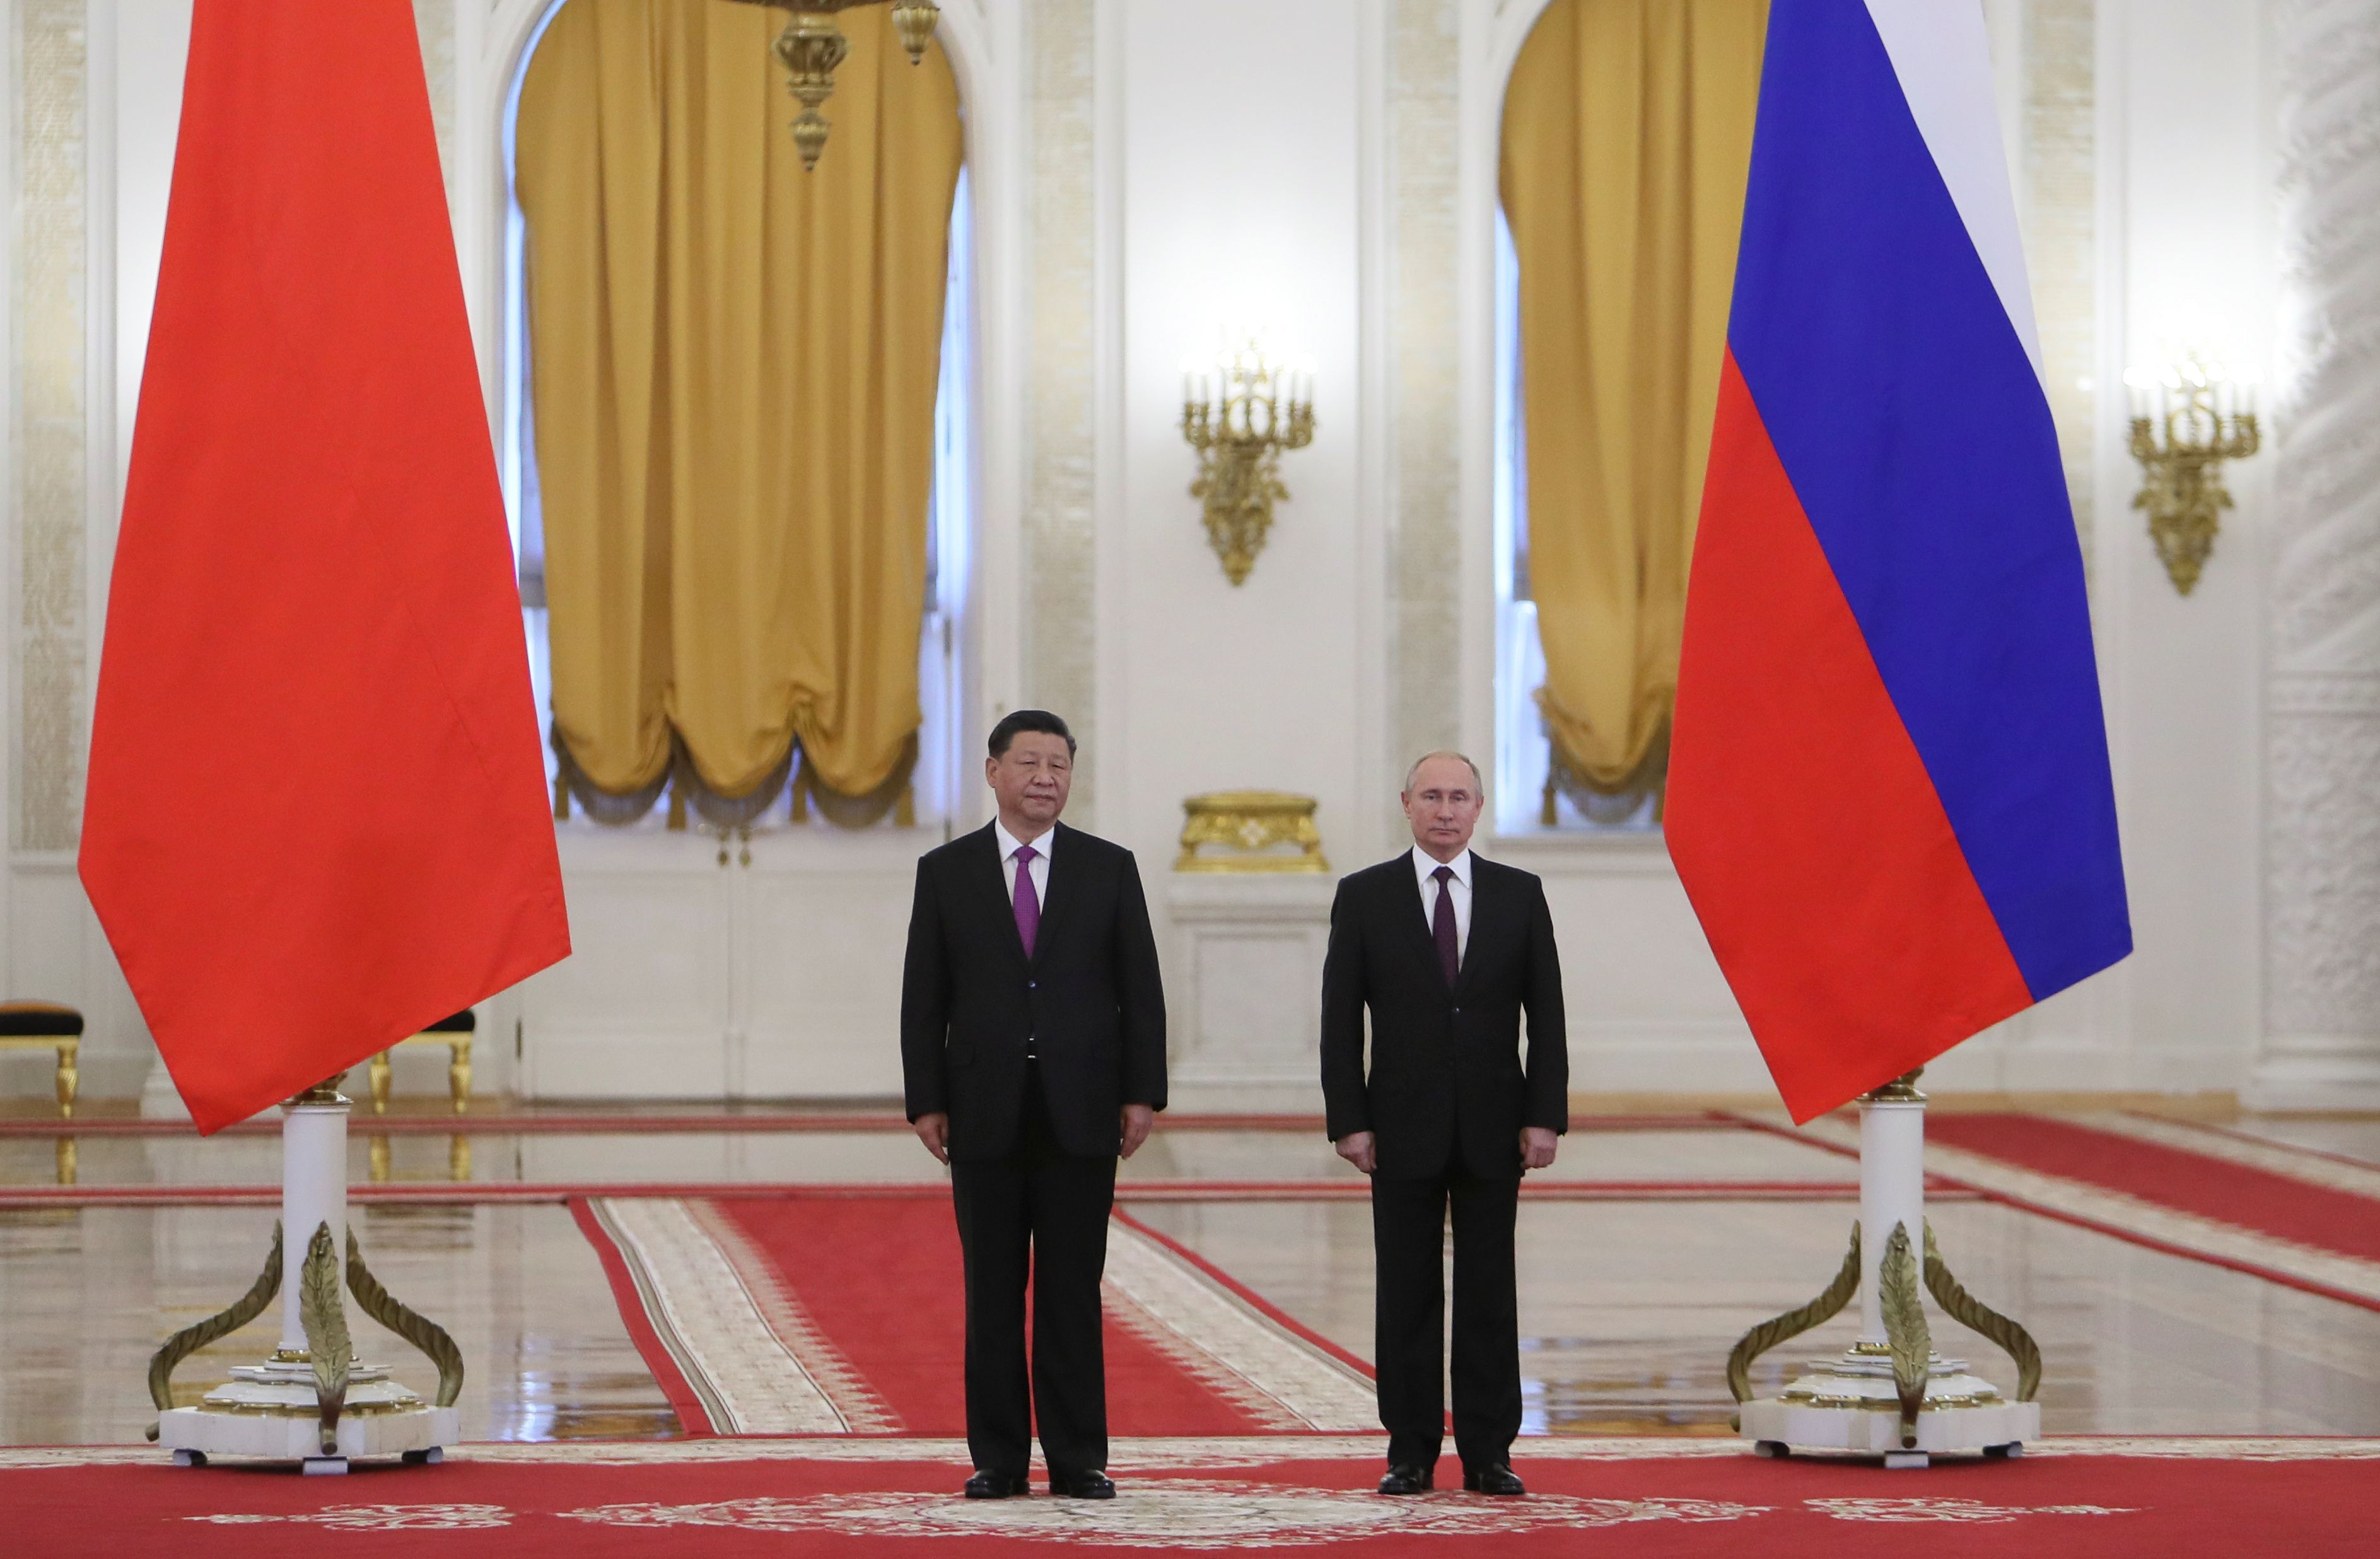 Putin y Xi coinciden en declaración conjunta en rechazar una posible intervención extranjera en Venezuela.